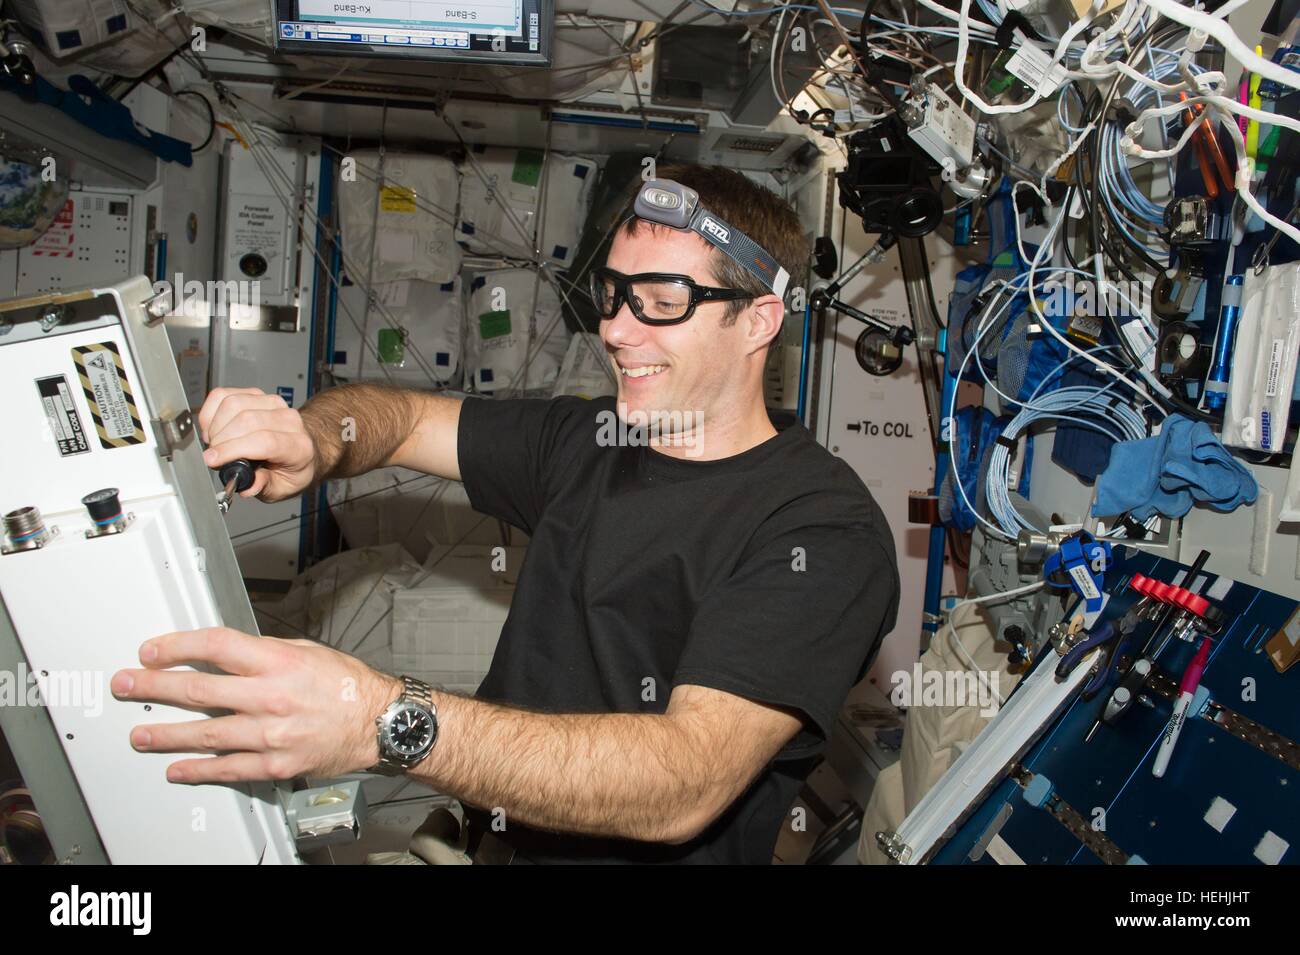 NASA-Expedition 50-51 erstklassige Crew Mitglied französischer Astronaut Thomas Pesquet von der European Space Agency arbeitet in der internationalen Raumstation ISS Harmonie Knoten 26. November 2016 in der Erdumlaufbahn. Stockfoto